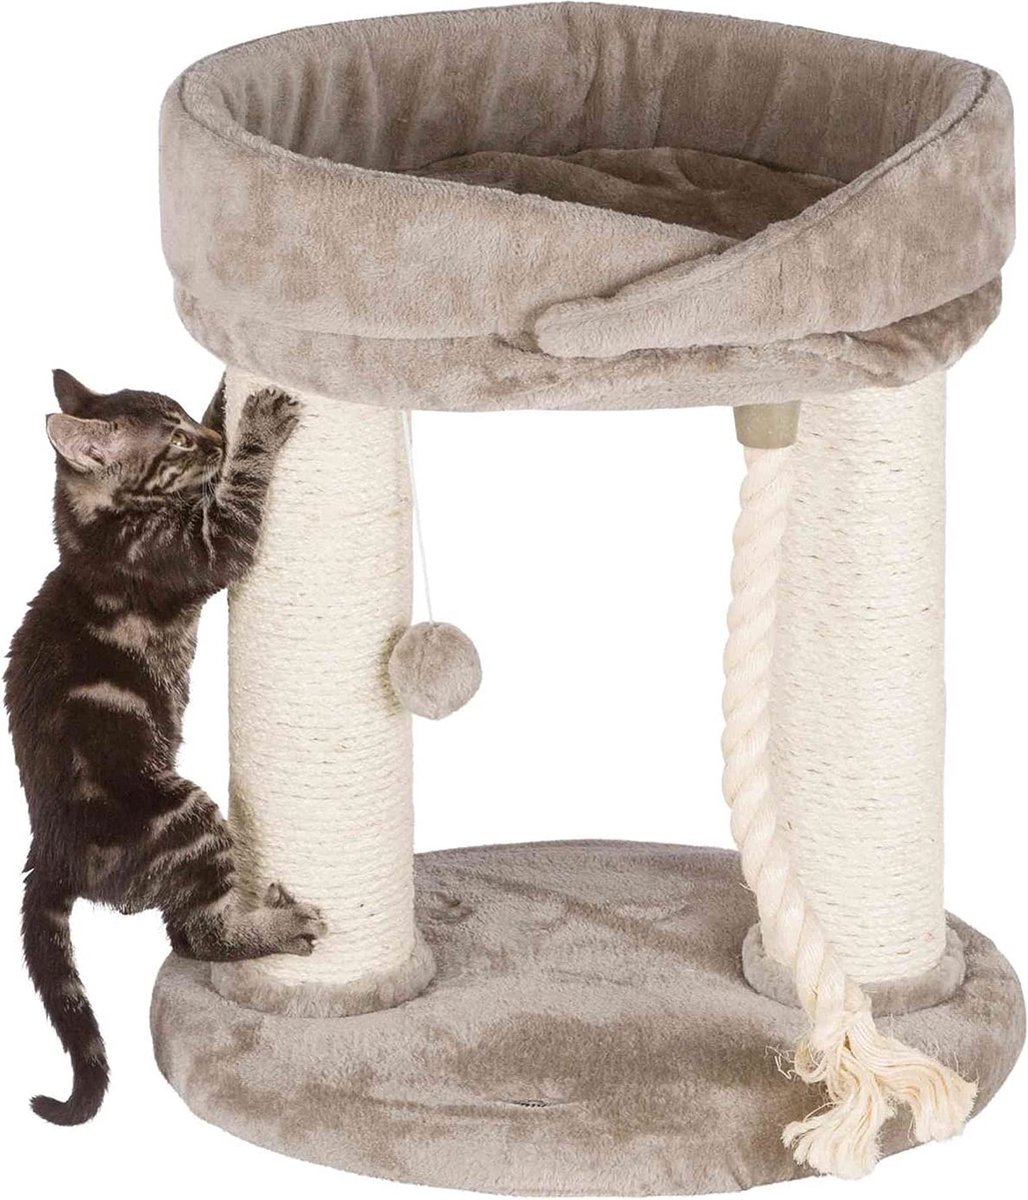 Krabpaal – katten krabpaal – katten speelgoed – cat tree – cat scratcher